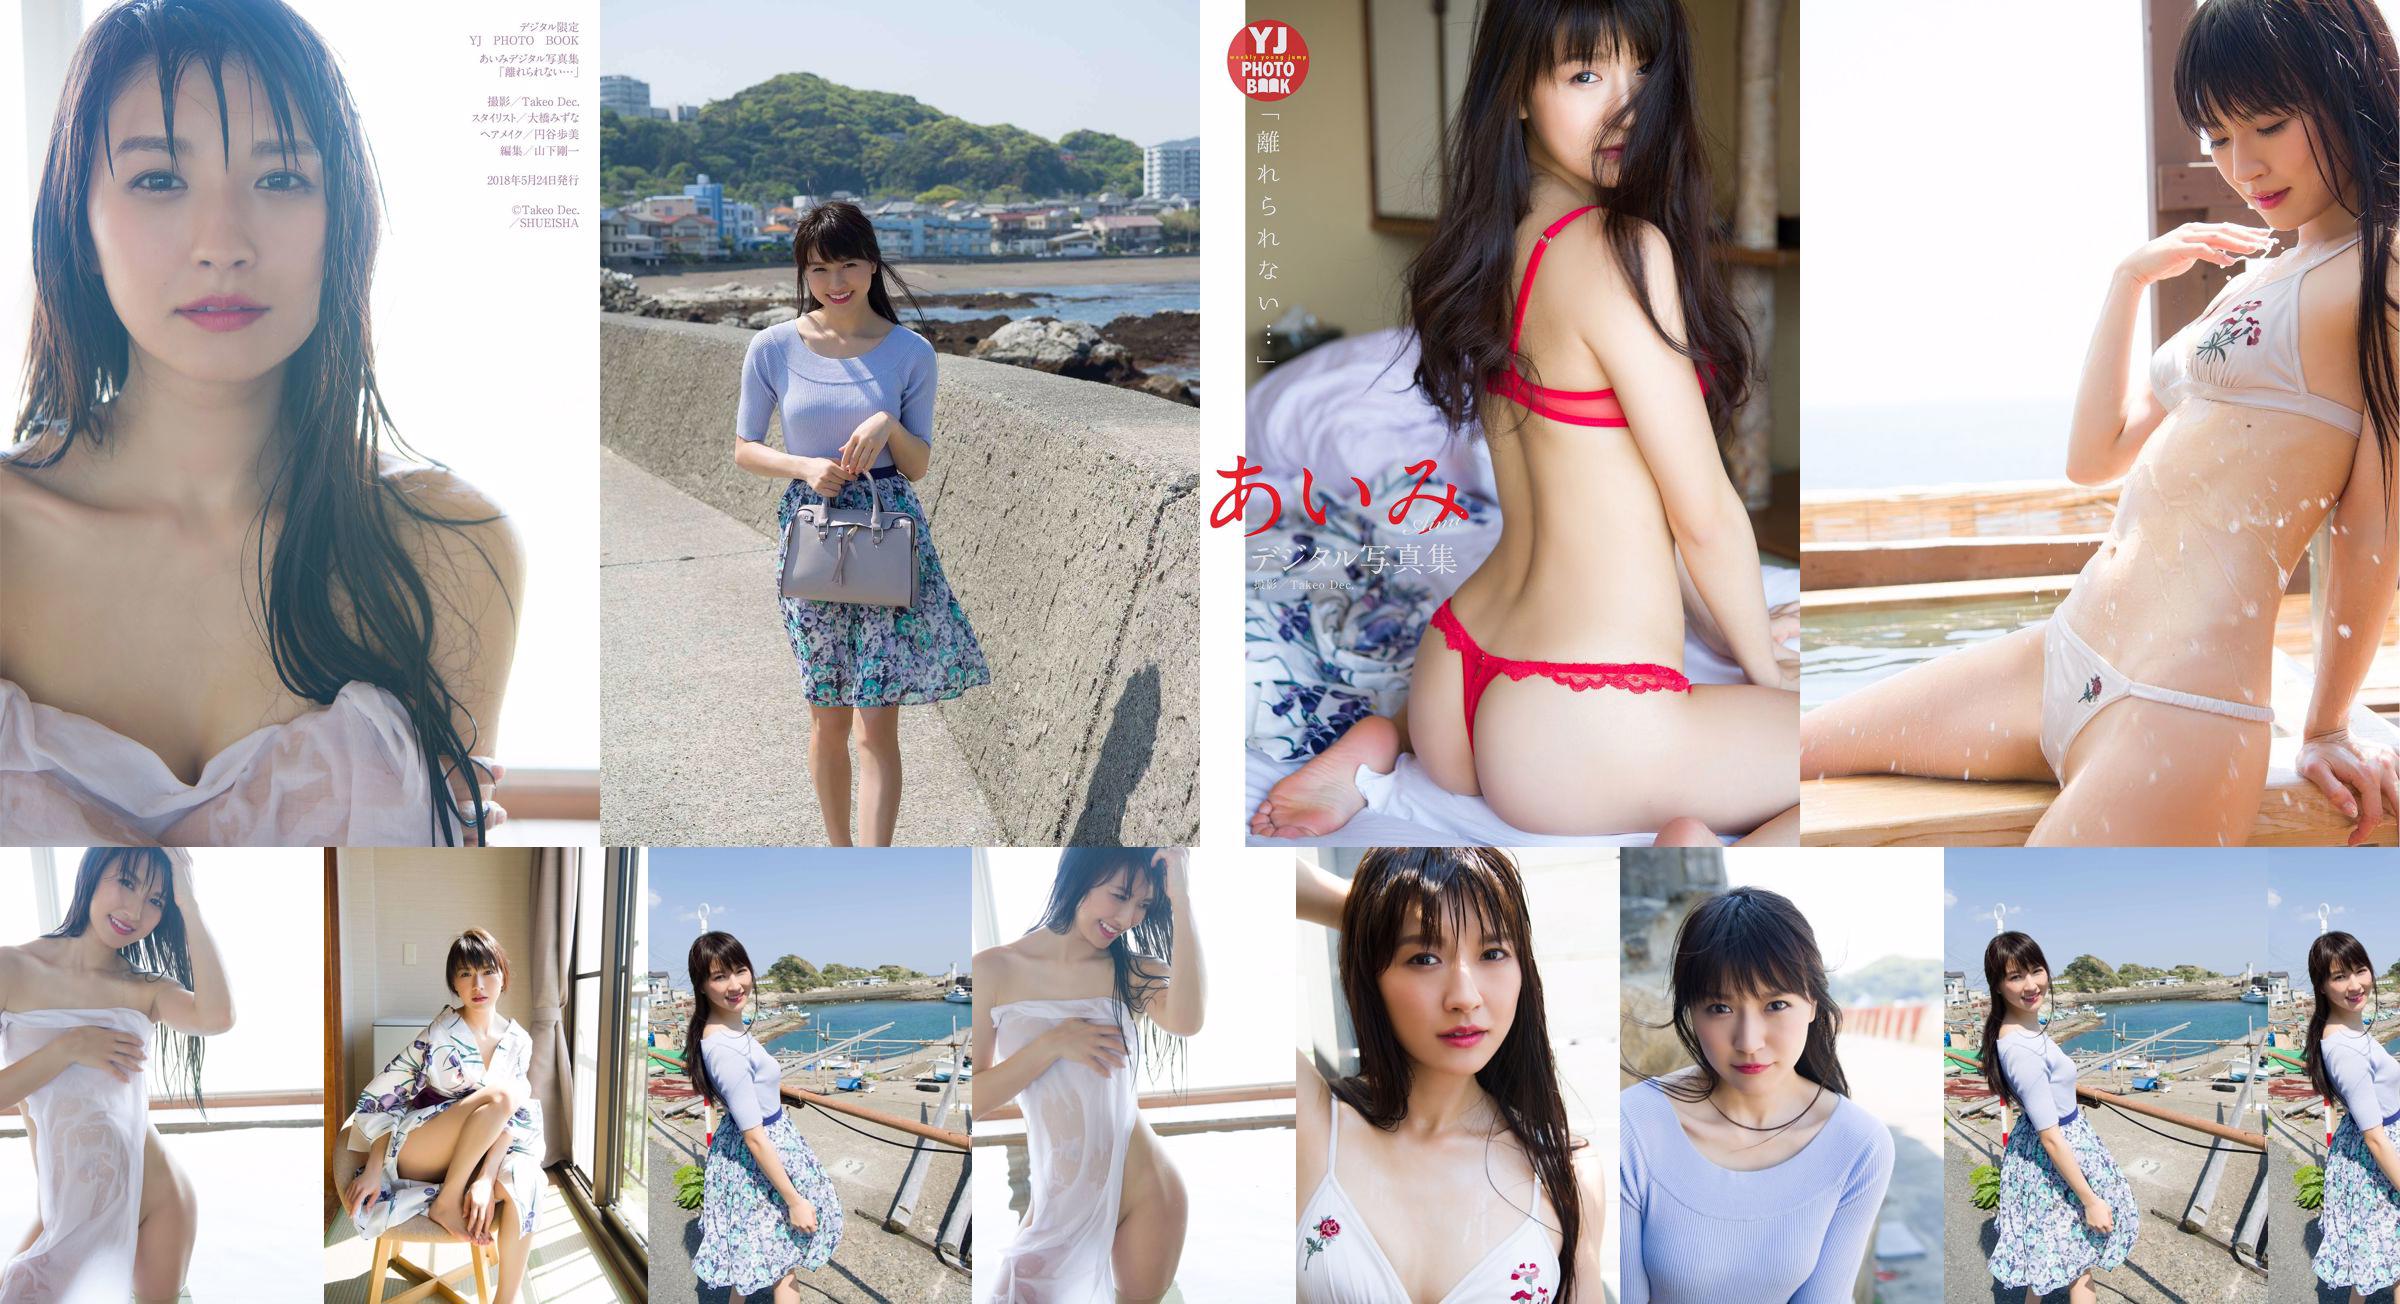 Aimi Nakano "Eu não posso sair..." [Livro de fotos digital limitado da YJ] No.954c65 Página 4